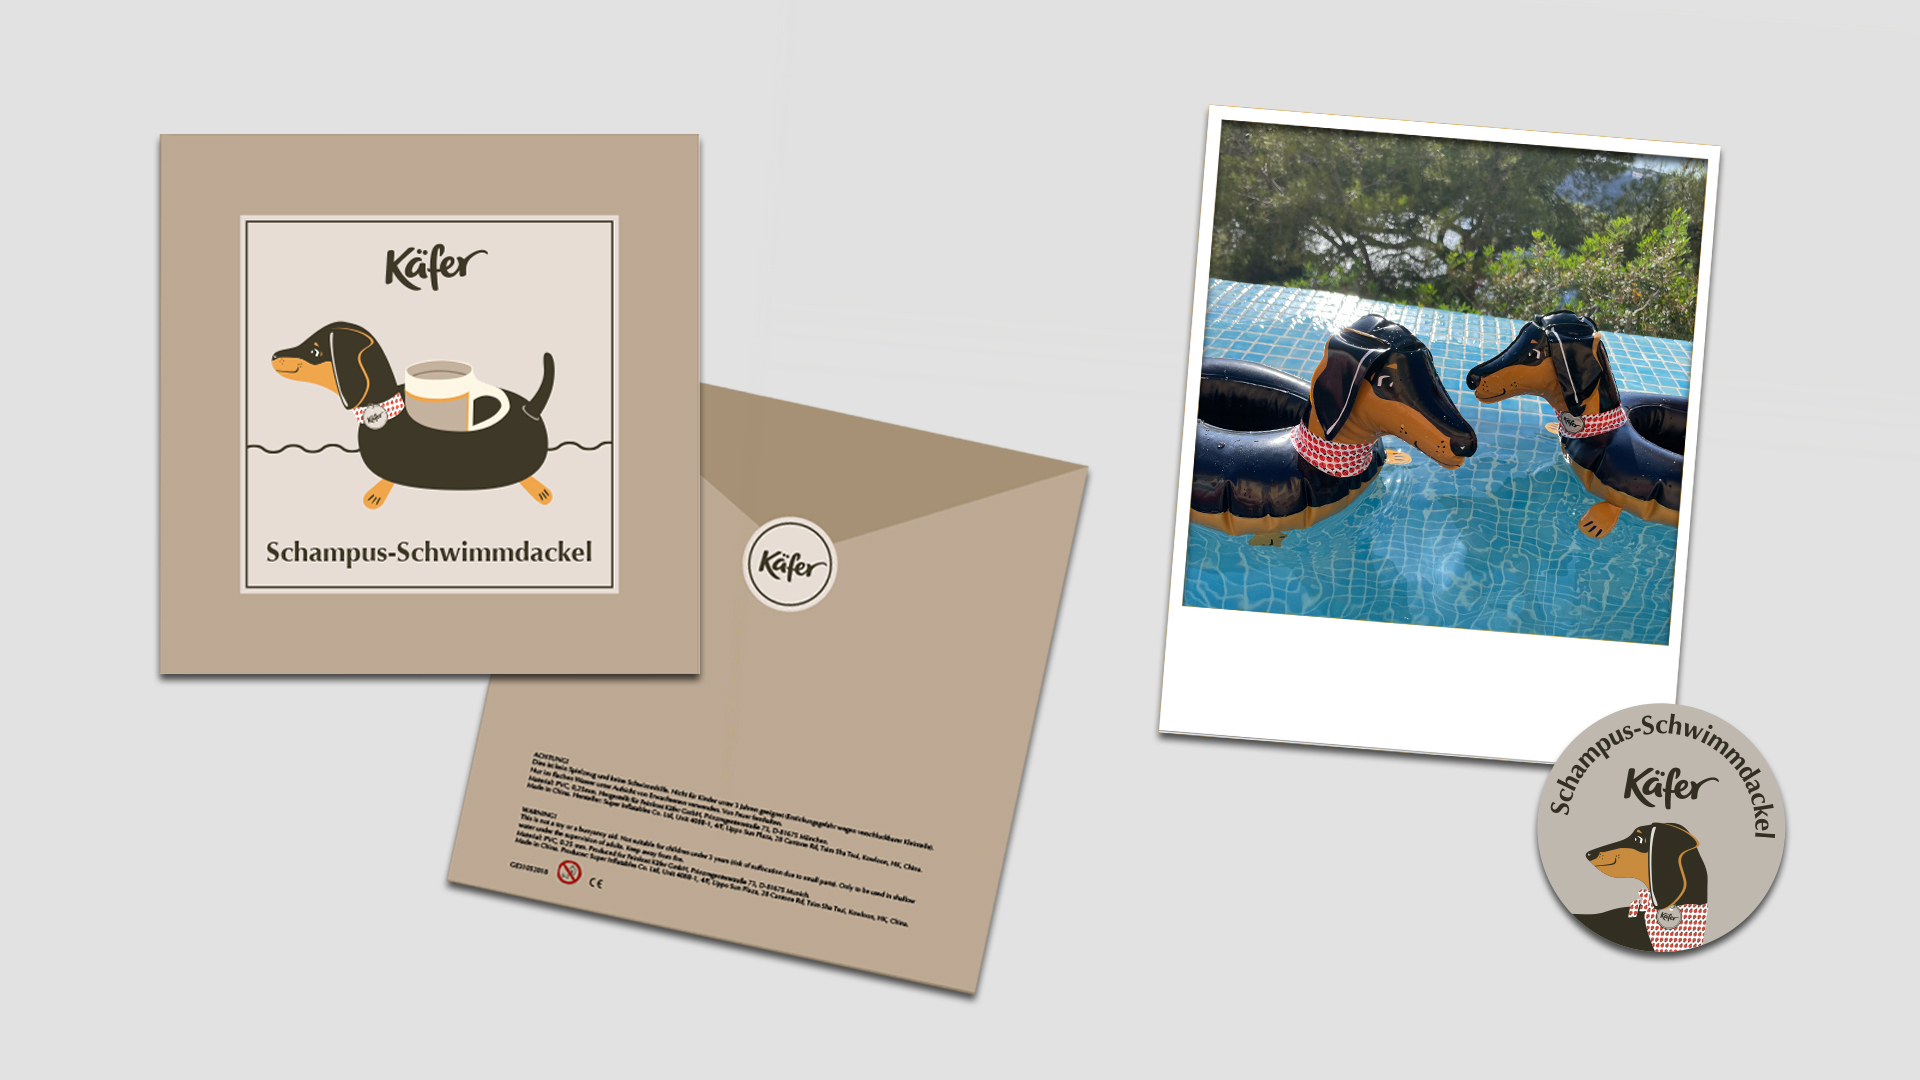 Darstellung des Packagings sowie ein Bild im Einsatz des Oktoberfest-Merchandisings, das wir für Käfer kreiert haben.